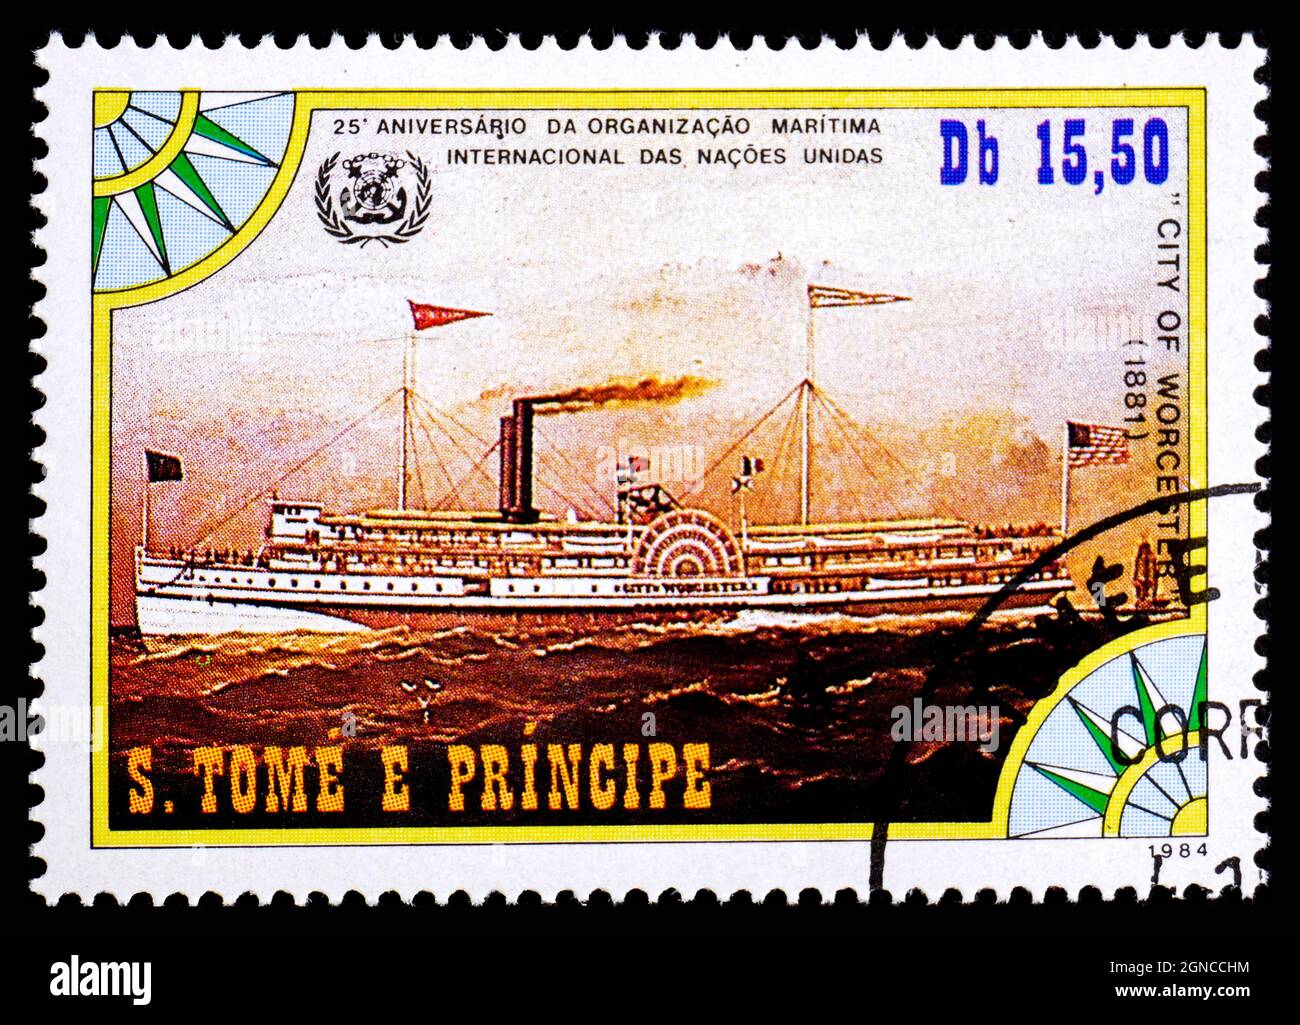 ST. ISOLE THOMAS E PRINCE - CIRCA 1984: Un francobollo stampato in Sao Tome e Principe mostra la vecchia nave a vapore City of Worcester 1881 Foto Stock